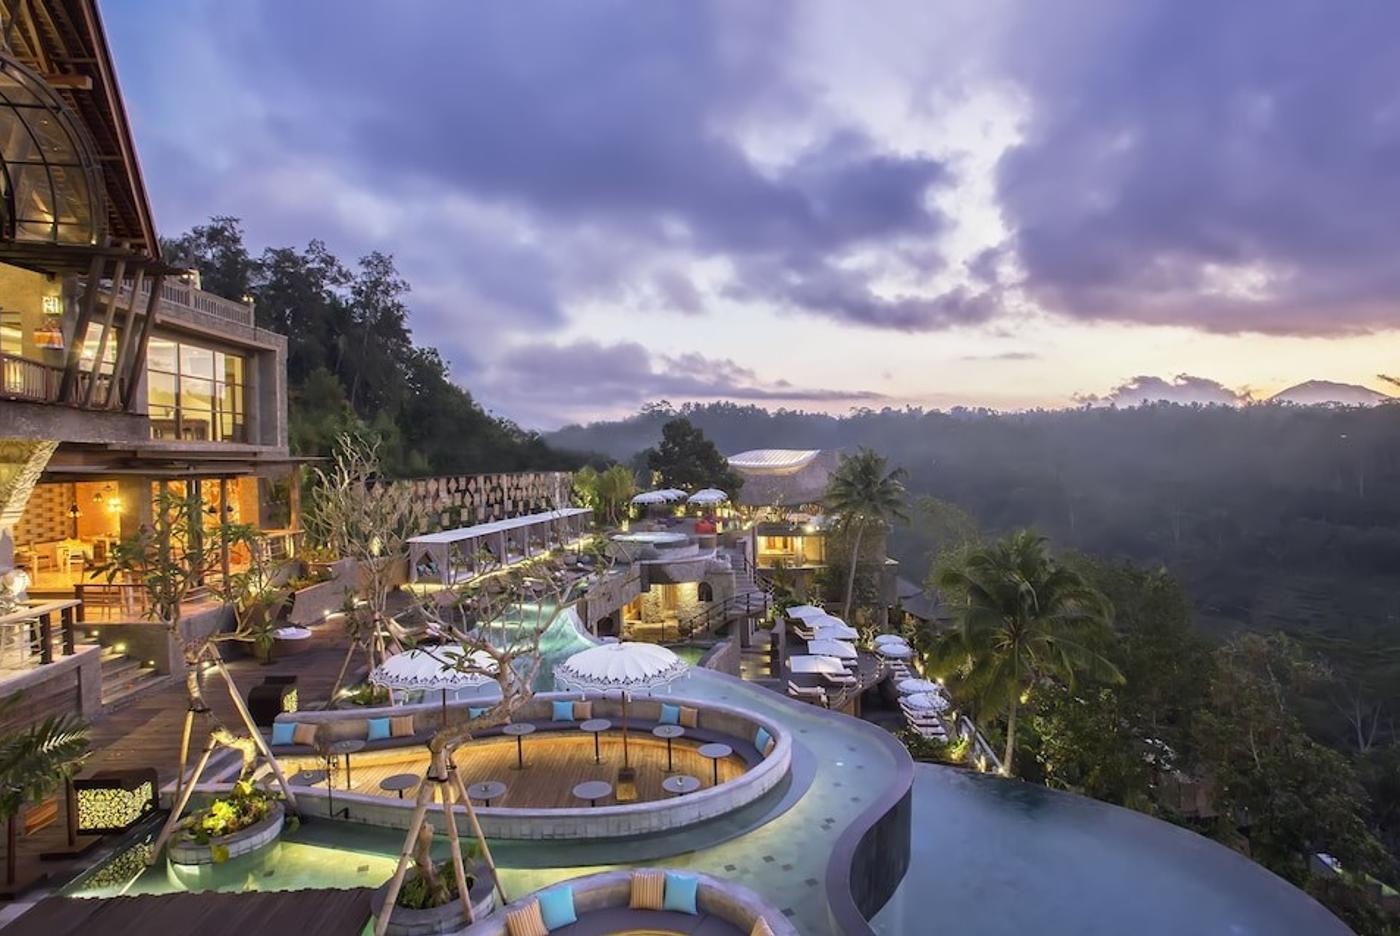 Bali, The Kayon Jungle Resort By Pramana